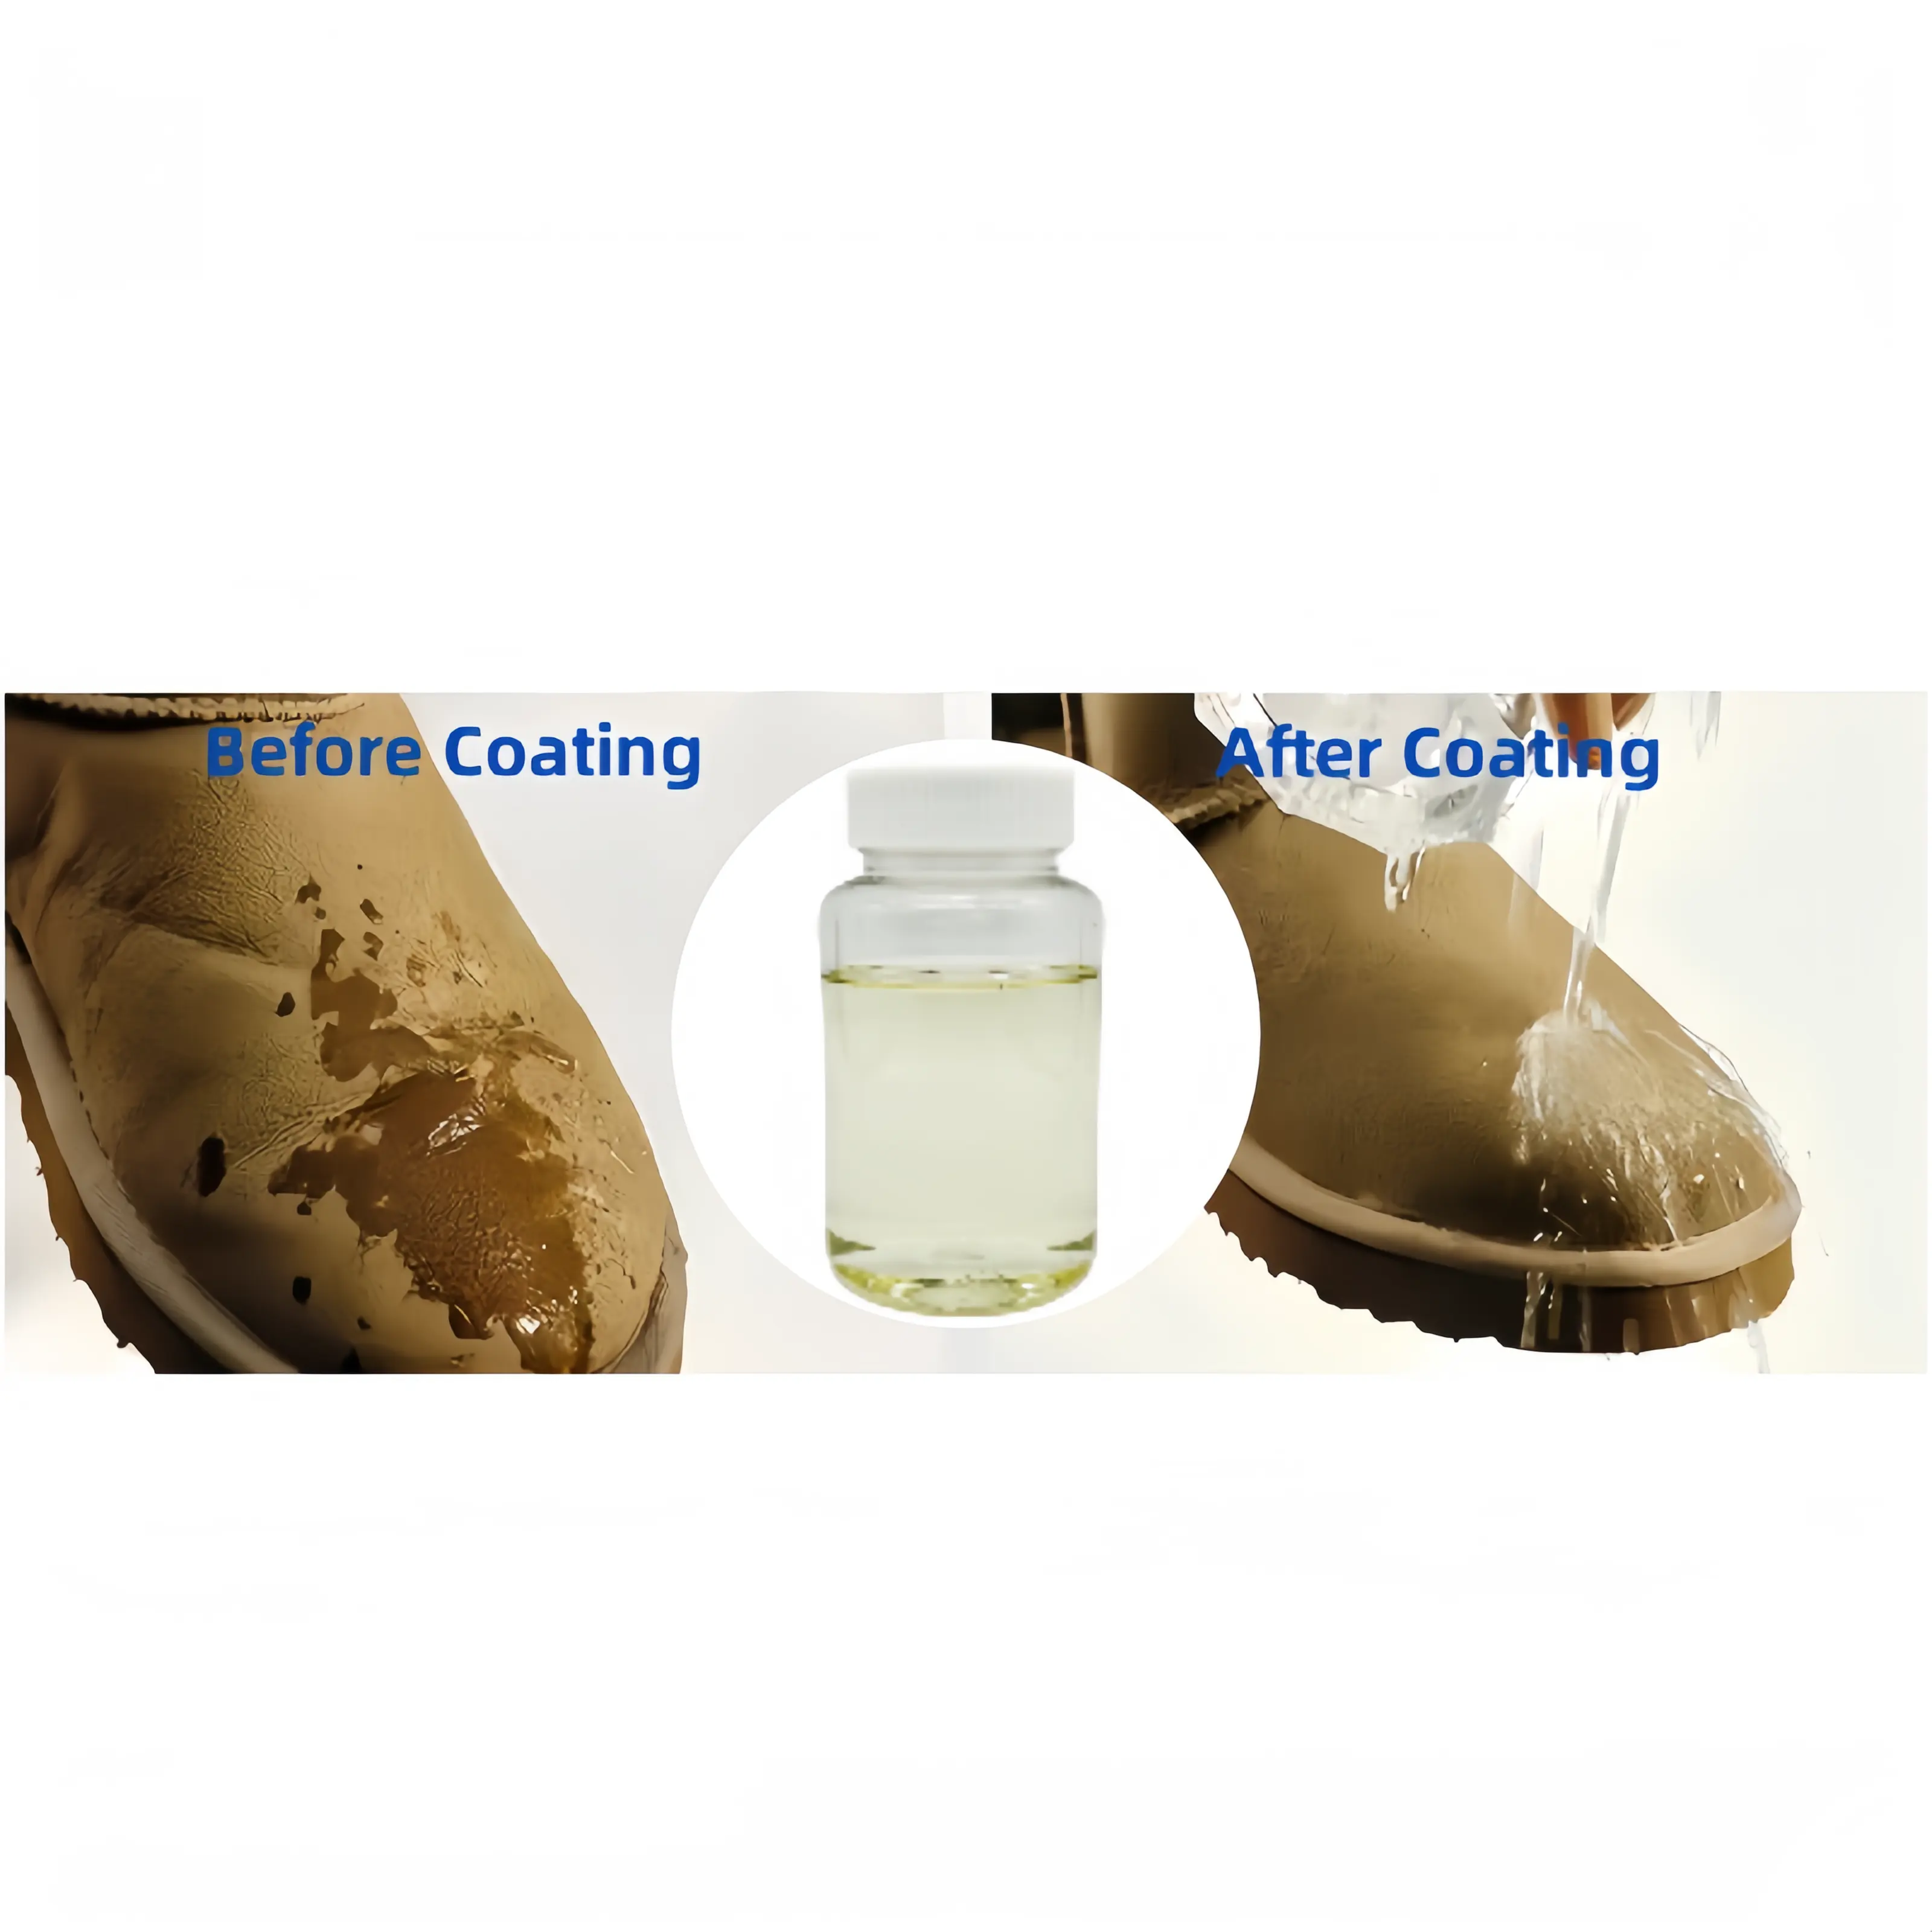 Súper hidrofóbico impermeable resistencia al aceite resistente a las manchas revestimiento C6 agente repelente al agua y al aceite para tela